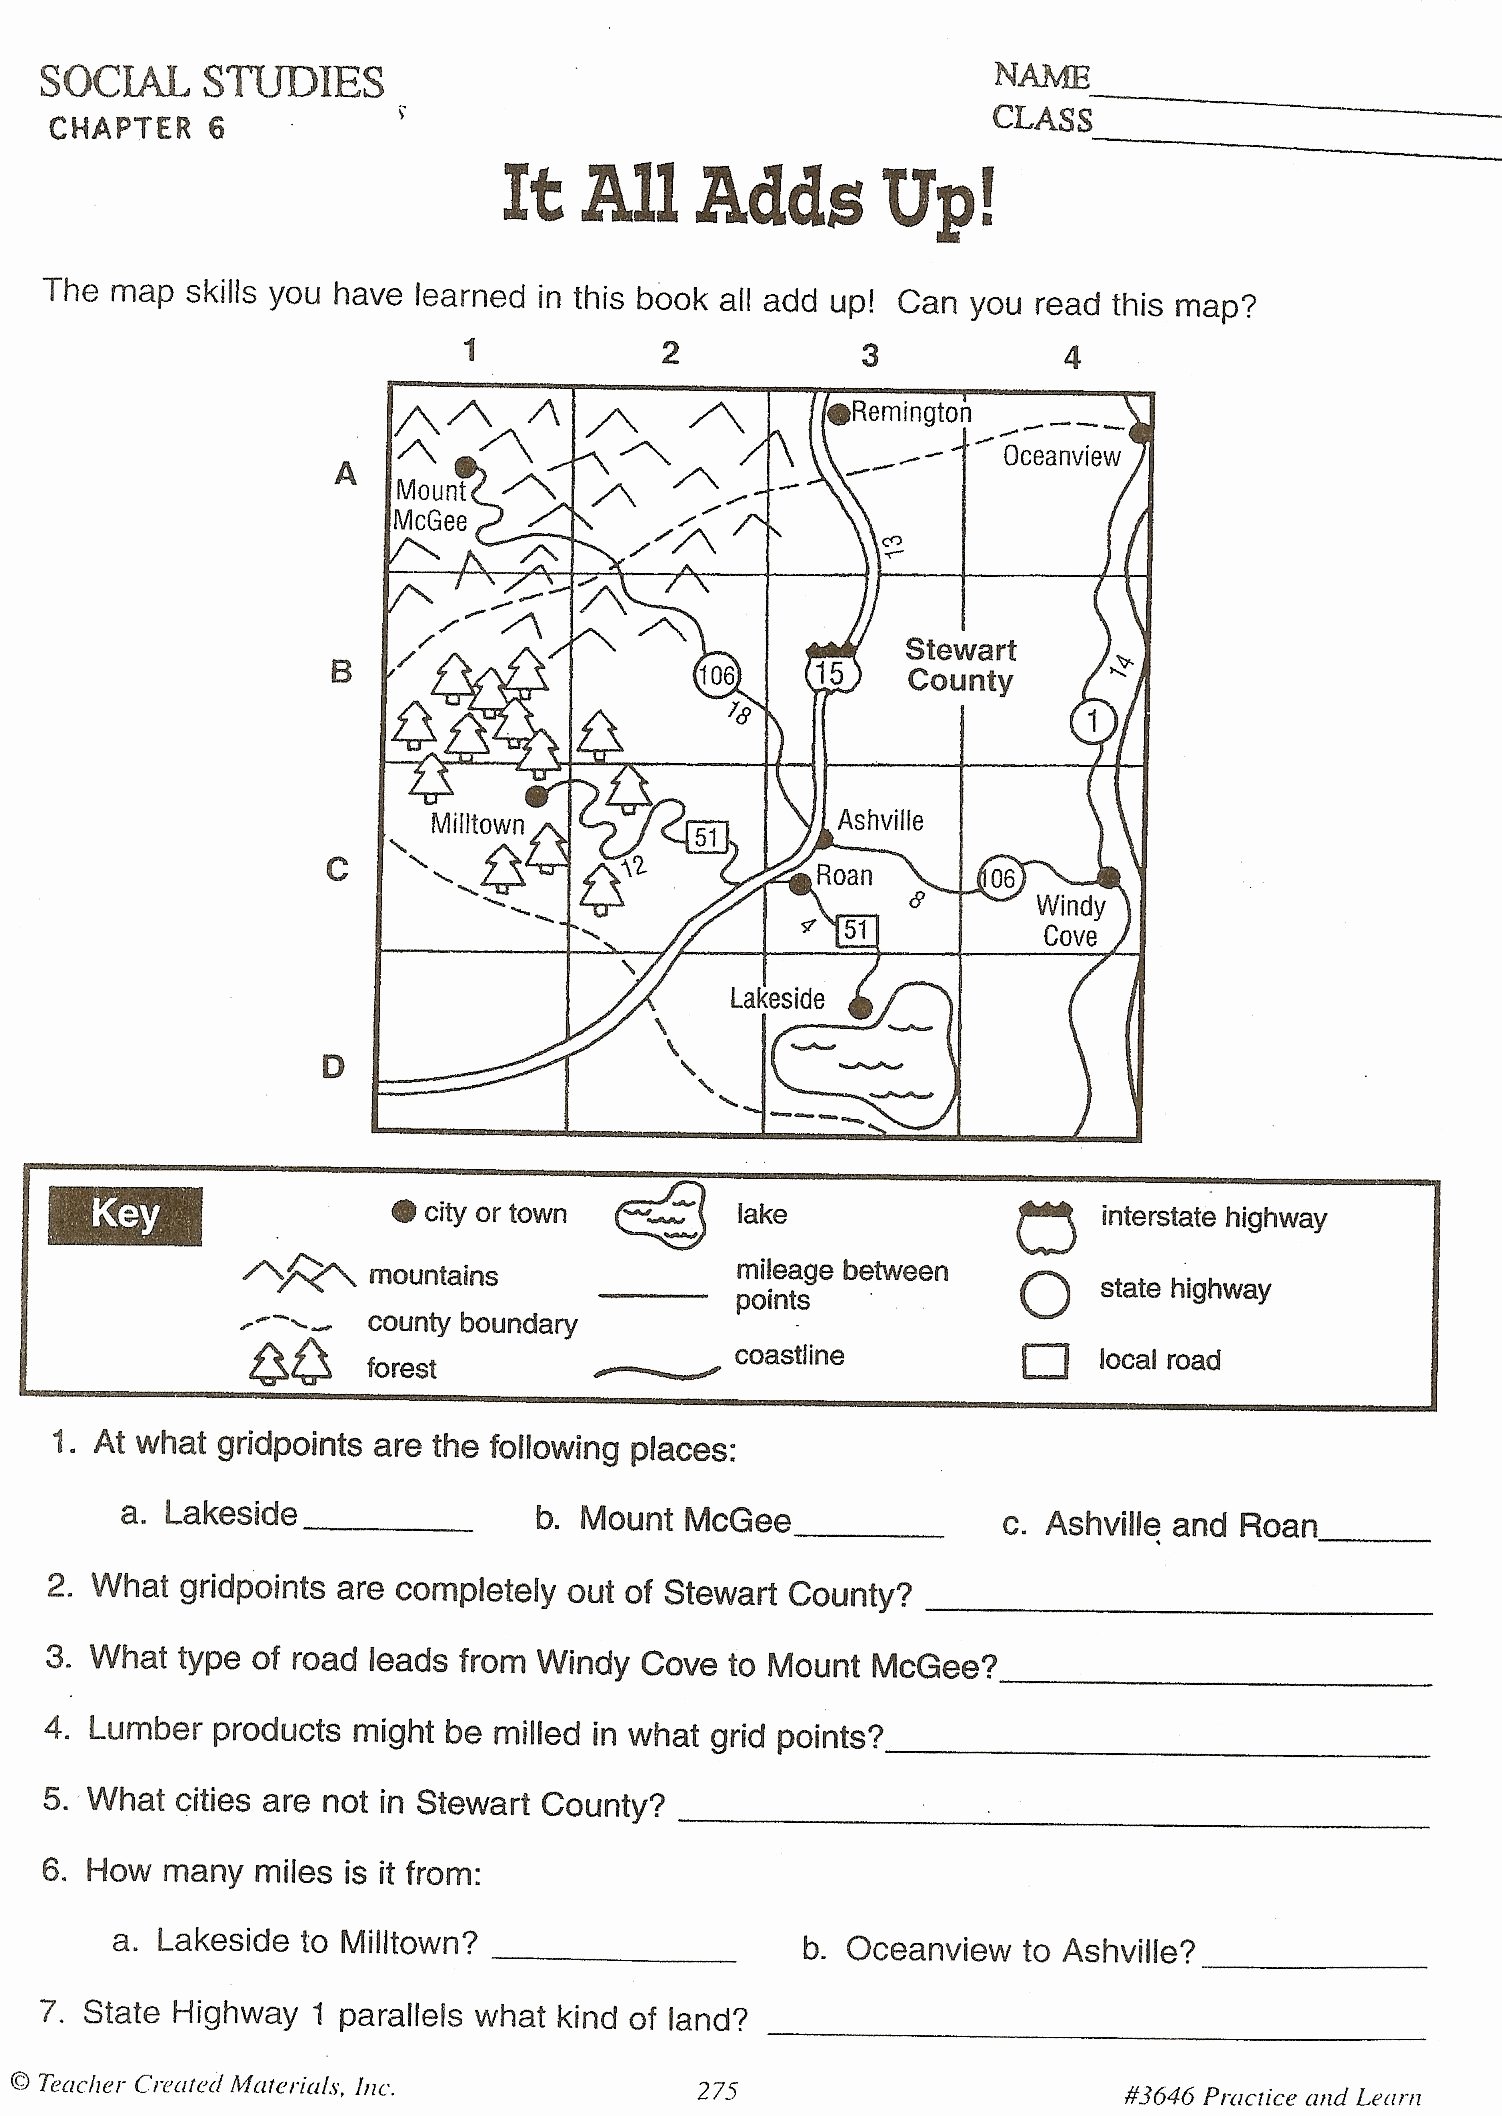 Fed Up Worksheet Answer Key Inspirational Worksheet Reading A Map Worksheet Grass Fedjp Worksheet